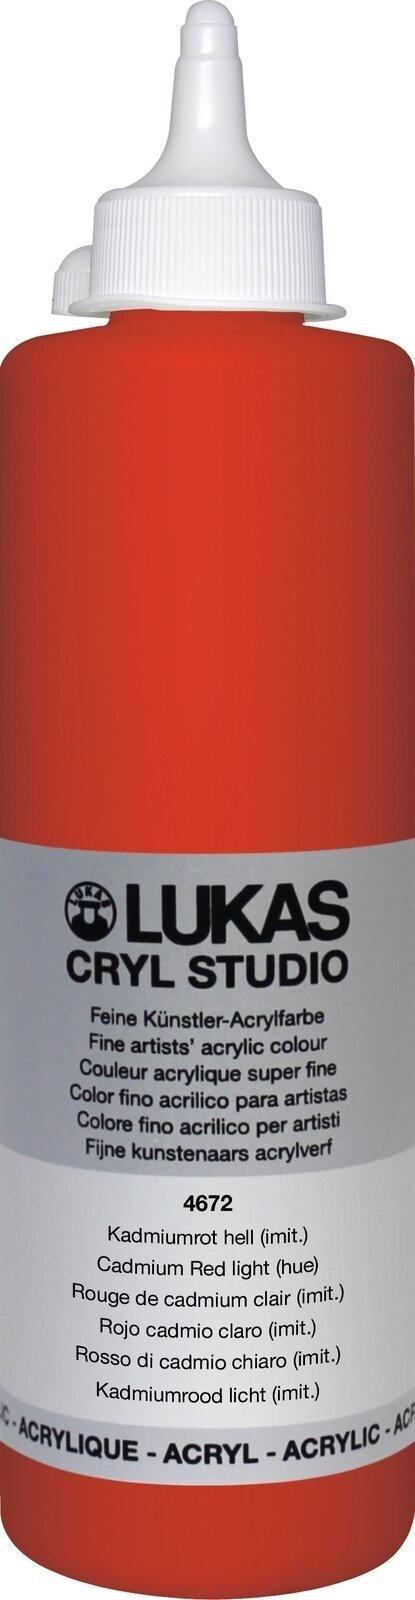 Peinture acrylique Lukas Cryl Studio Acrylic Paint Plastic Bottle Peinture acrylique Cadmium Red Light Hue 500 ml 1 pc